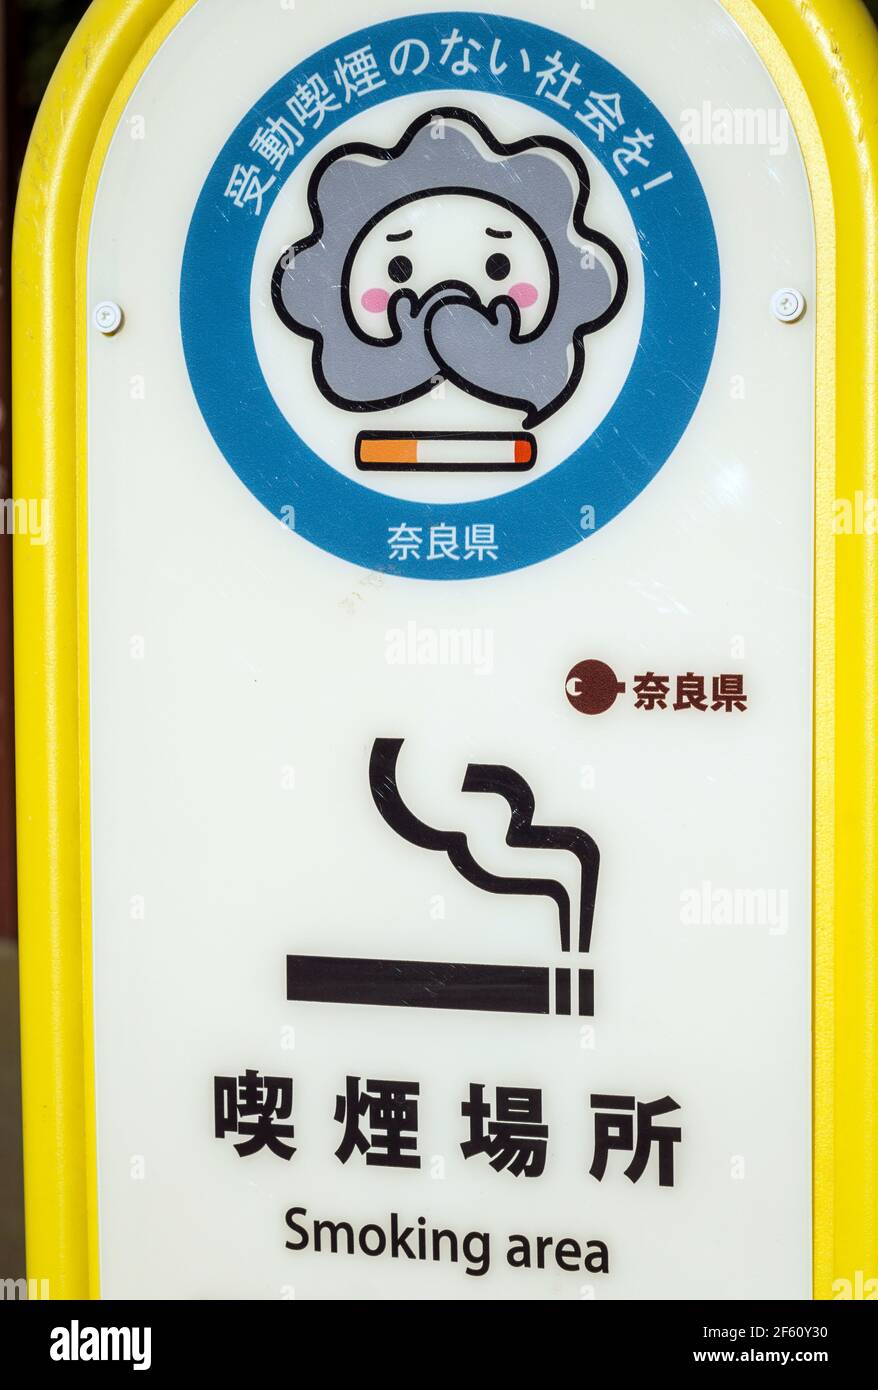 Un cartel con un personaje de dibujos animados que designa una zona de fumadores en Nara, Japón. La señal dice 'Creemos una sociedad sin fumar pasivo' Foto de stock